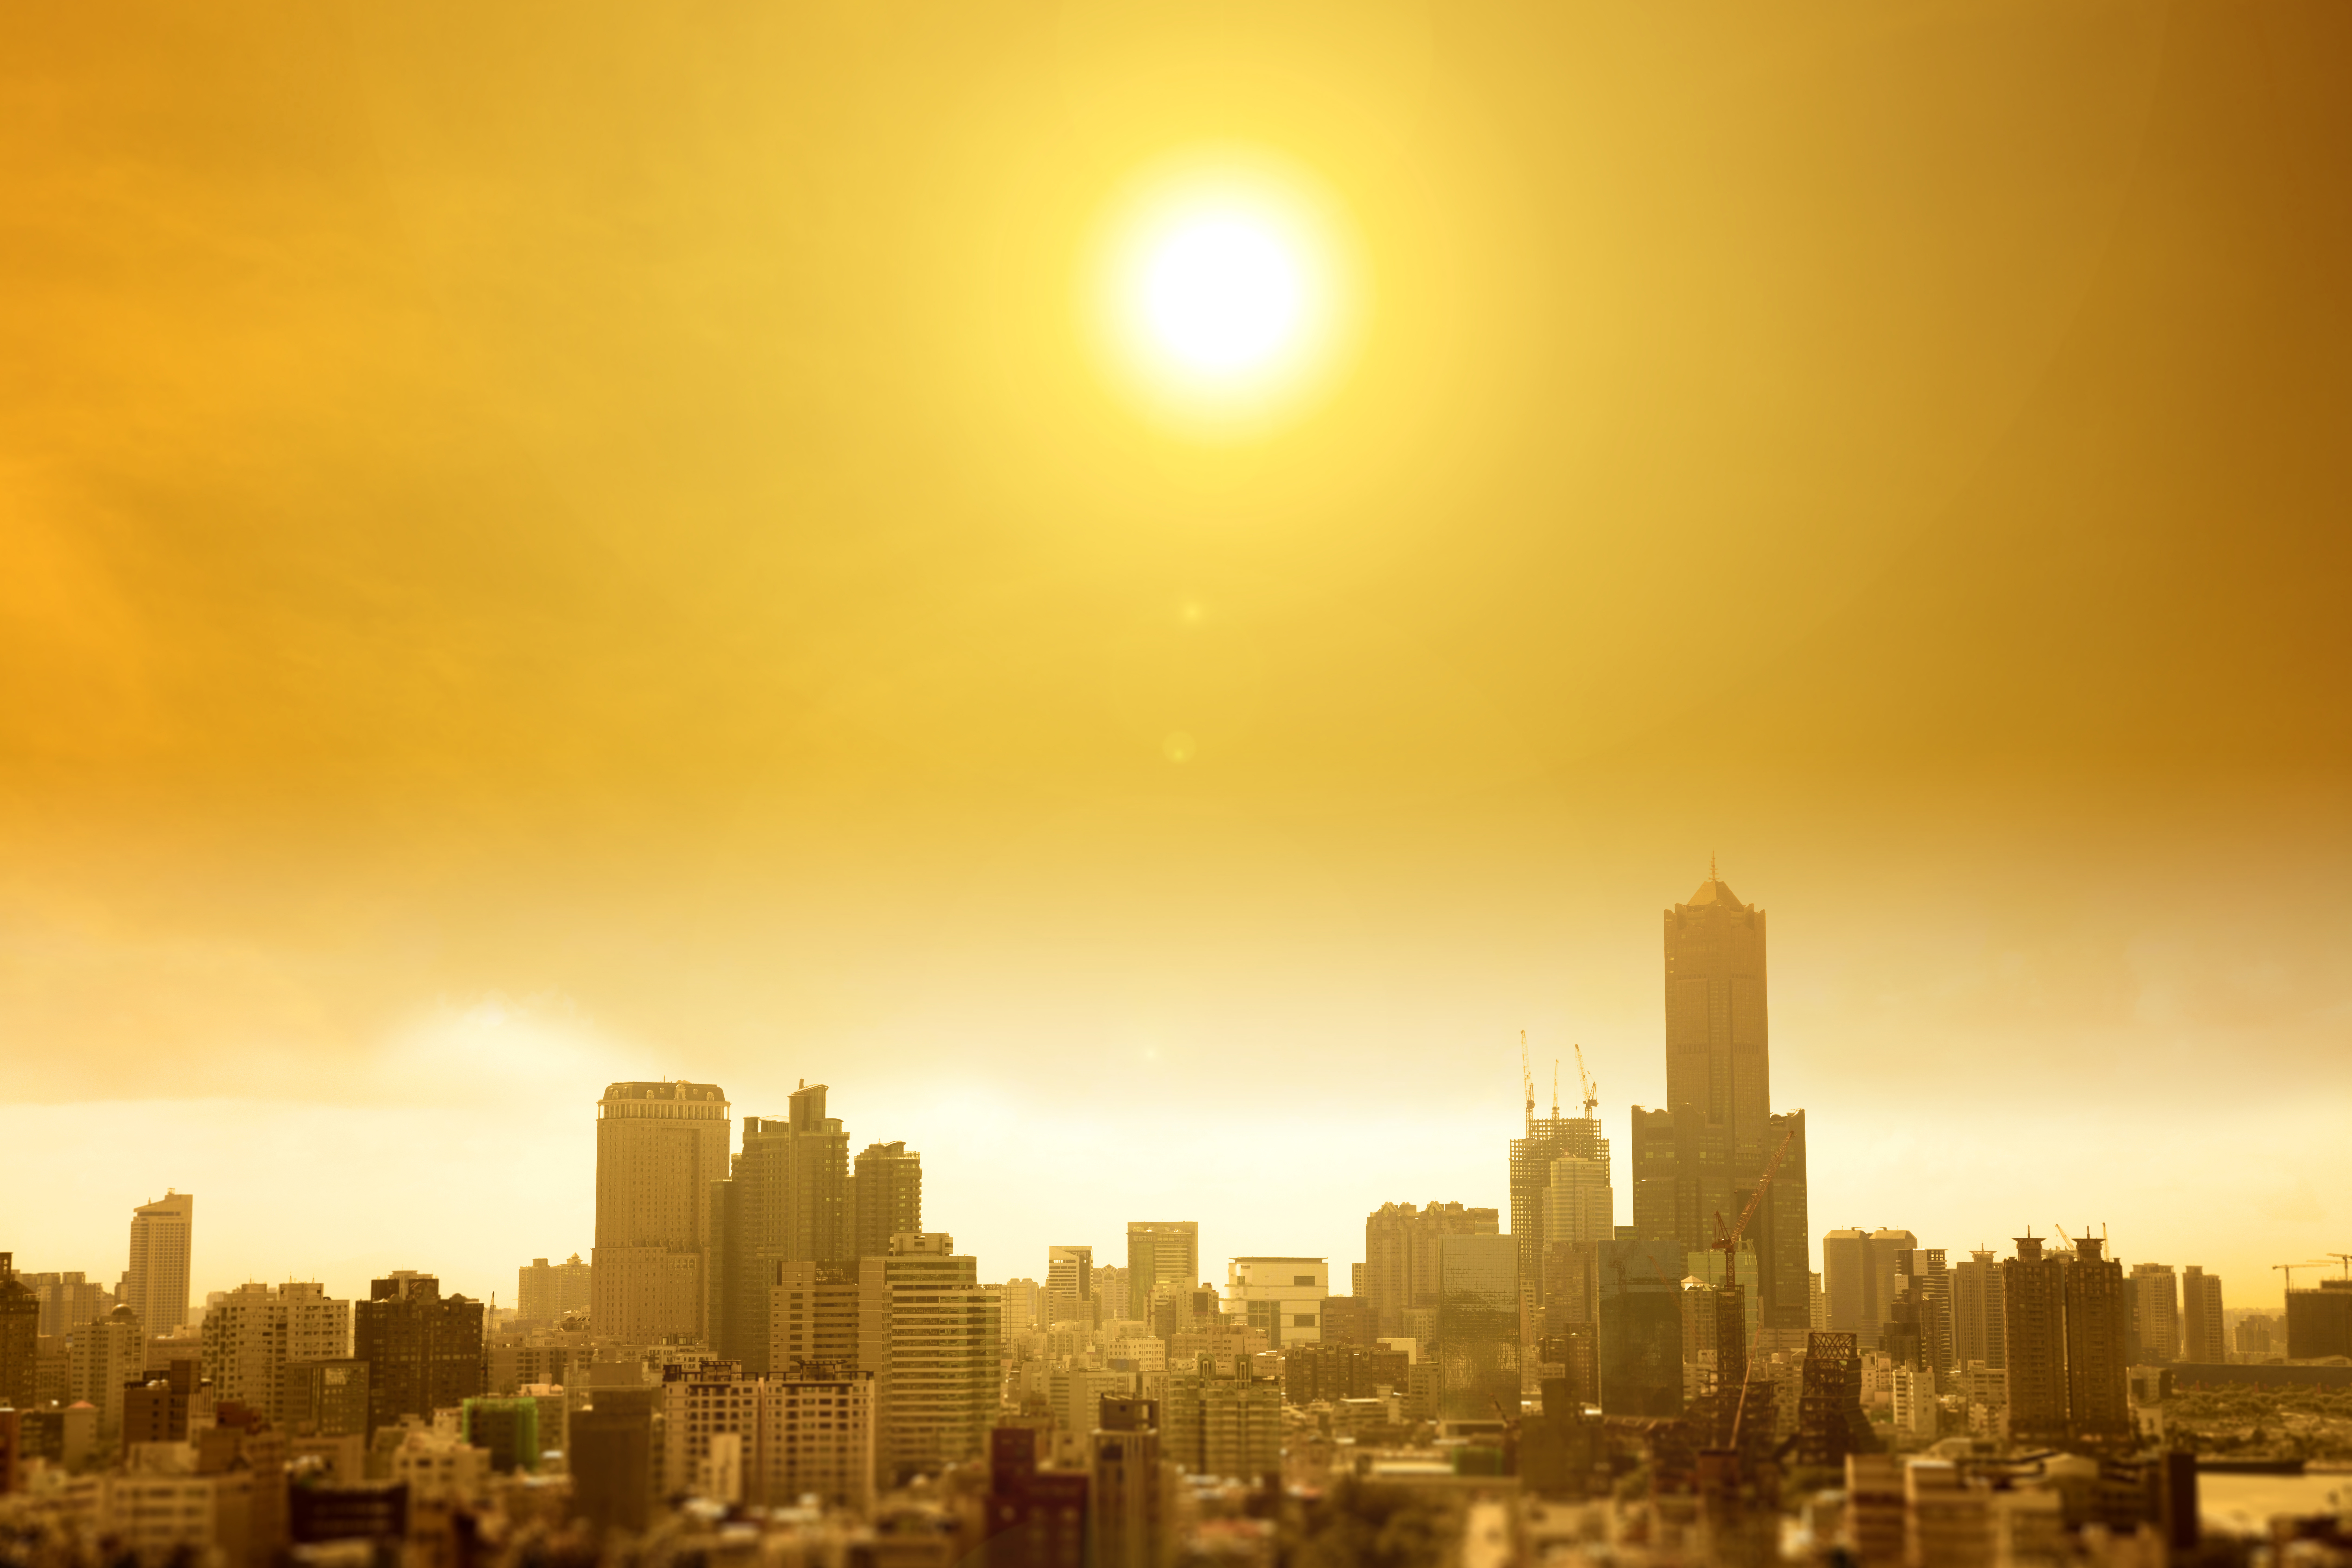 ciudad bajo el sol candente del verano